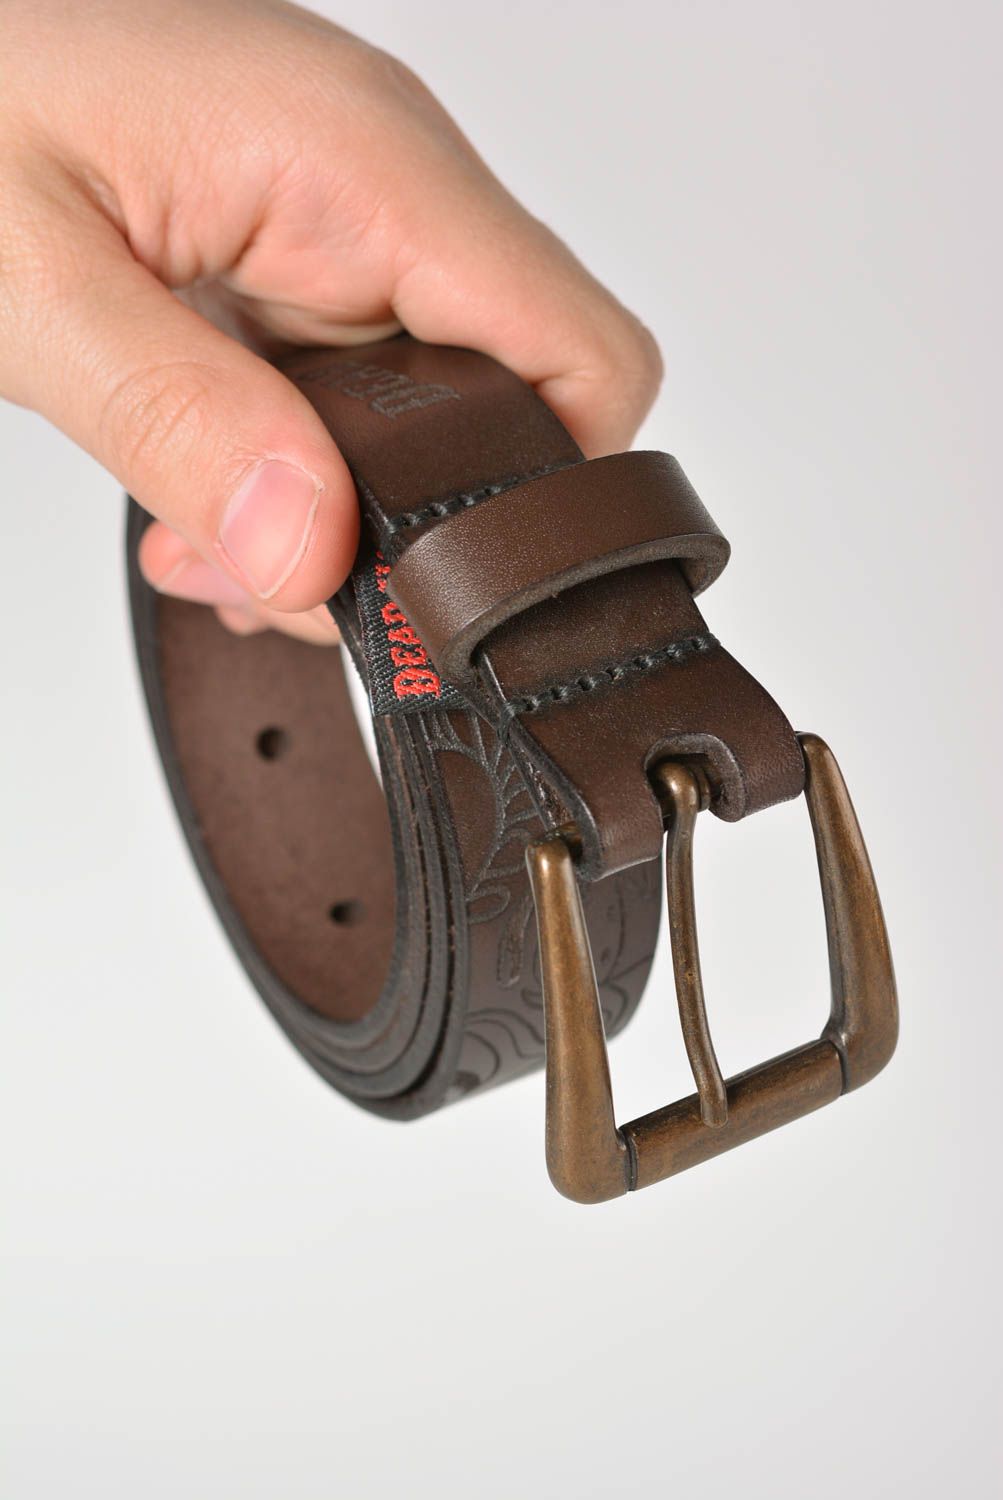 Cinturón de cuero artesanal ropa masculina original accesorio de moda bonito foto 3